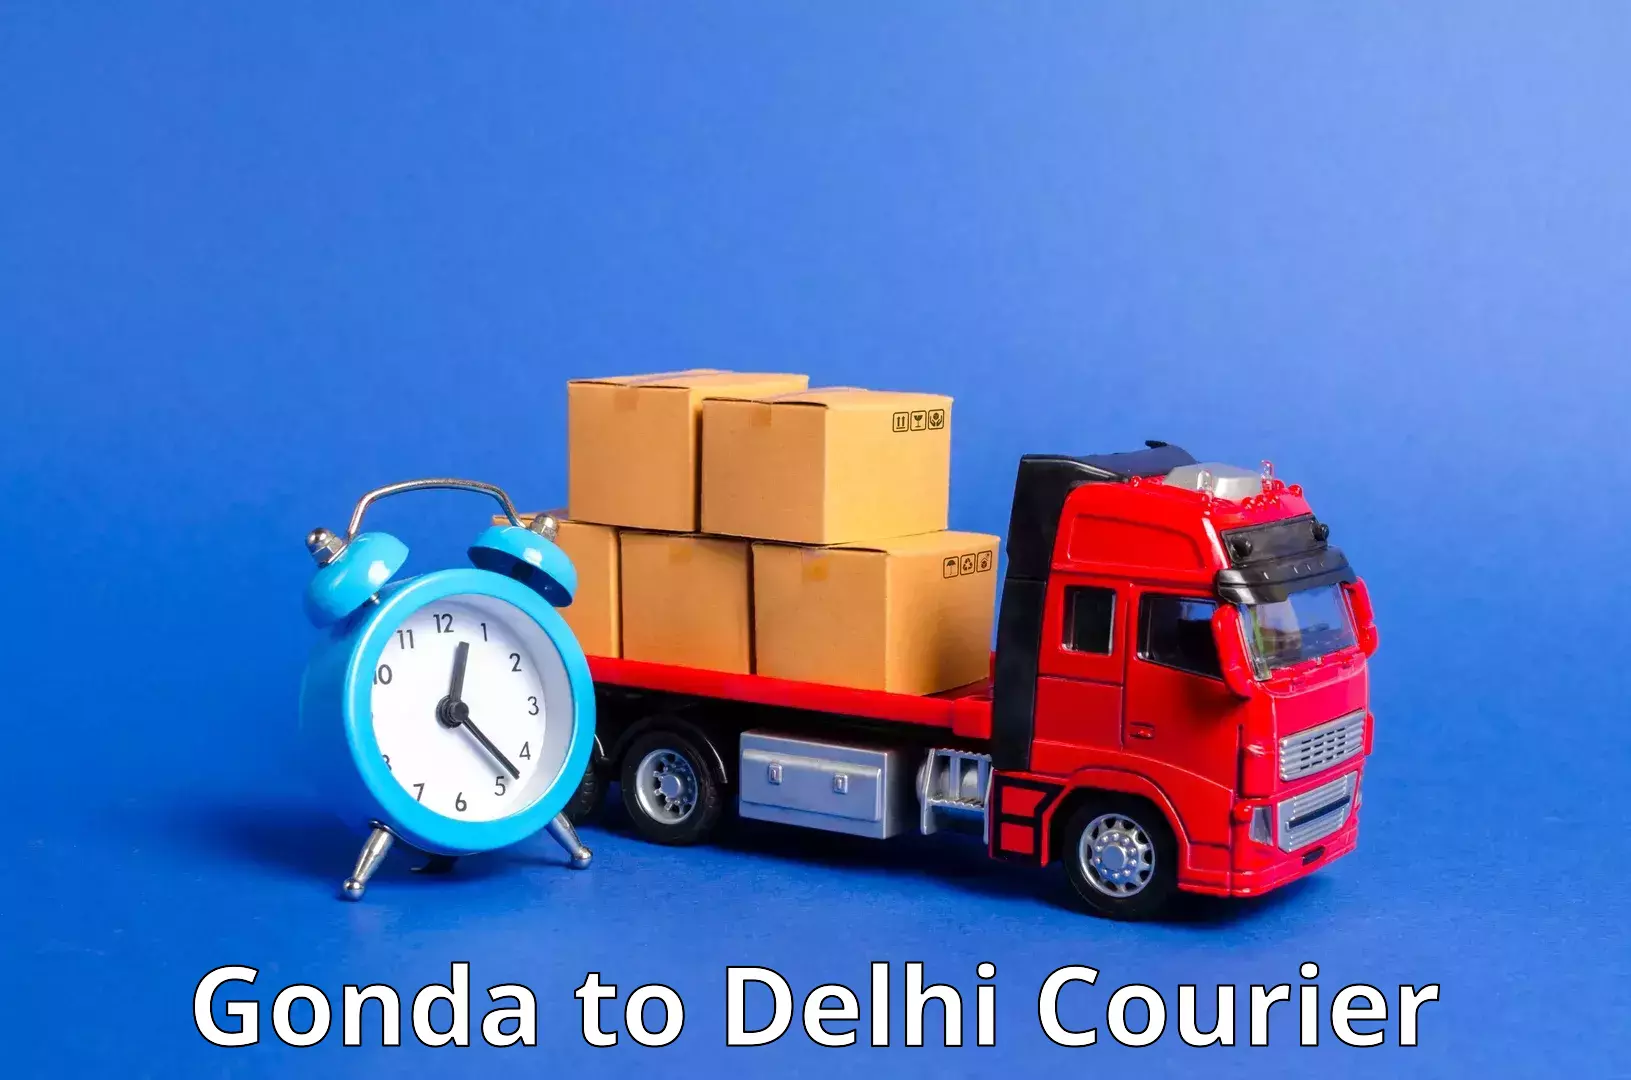 Overnight delivery services Gonda to Delhi